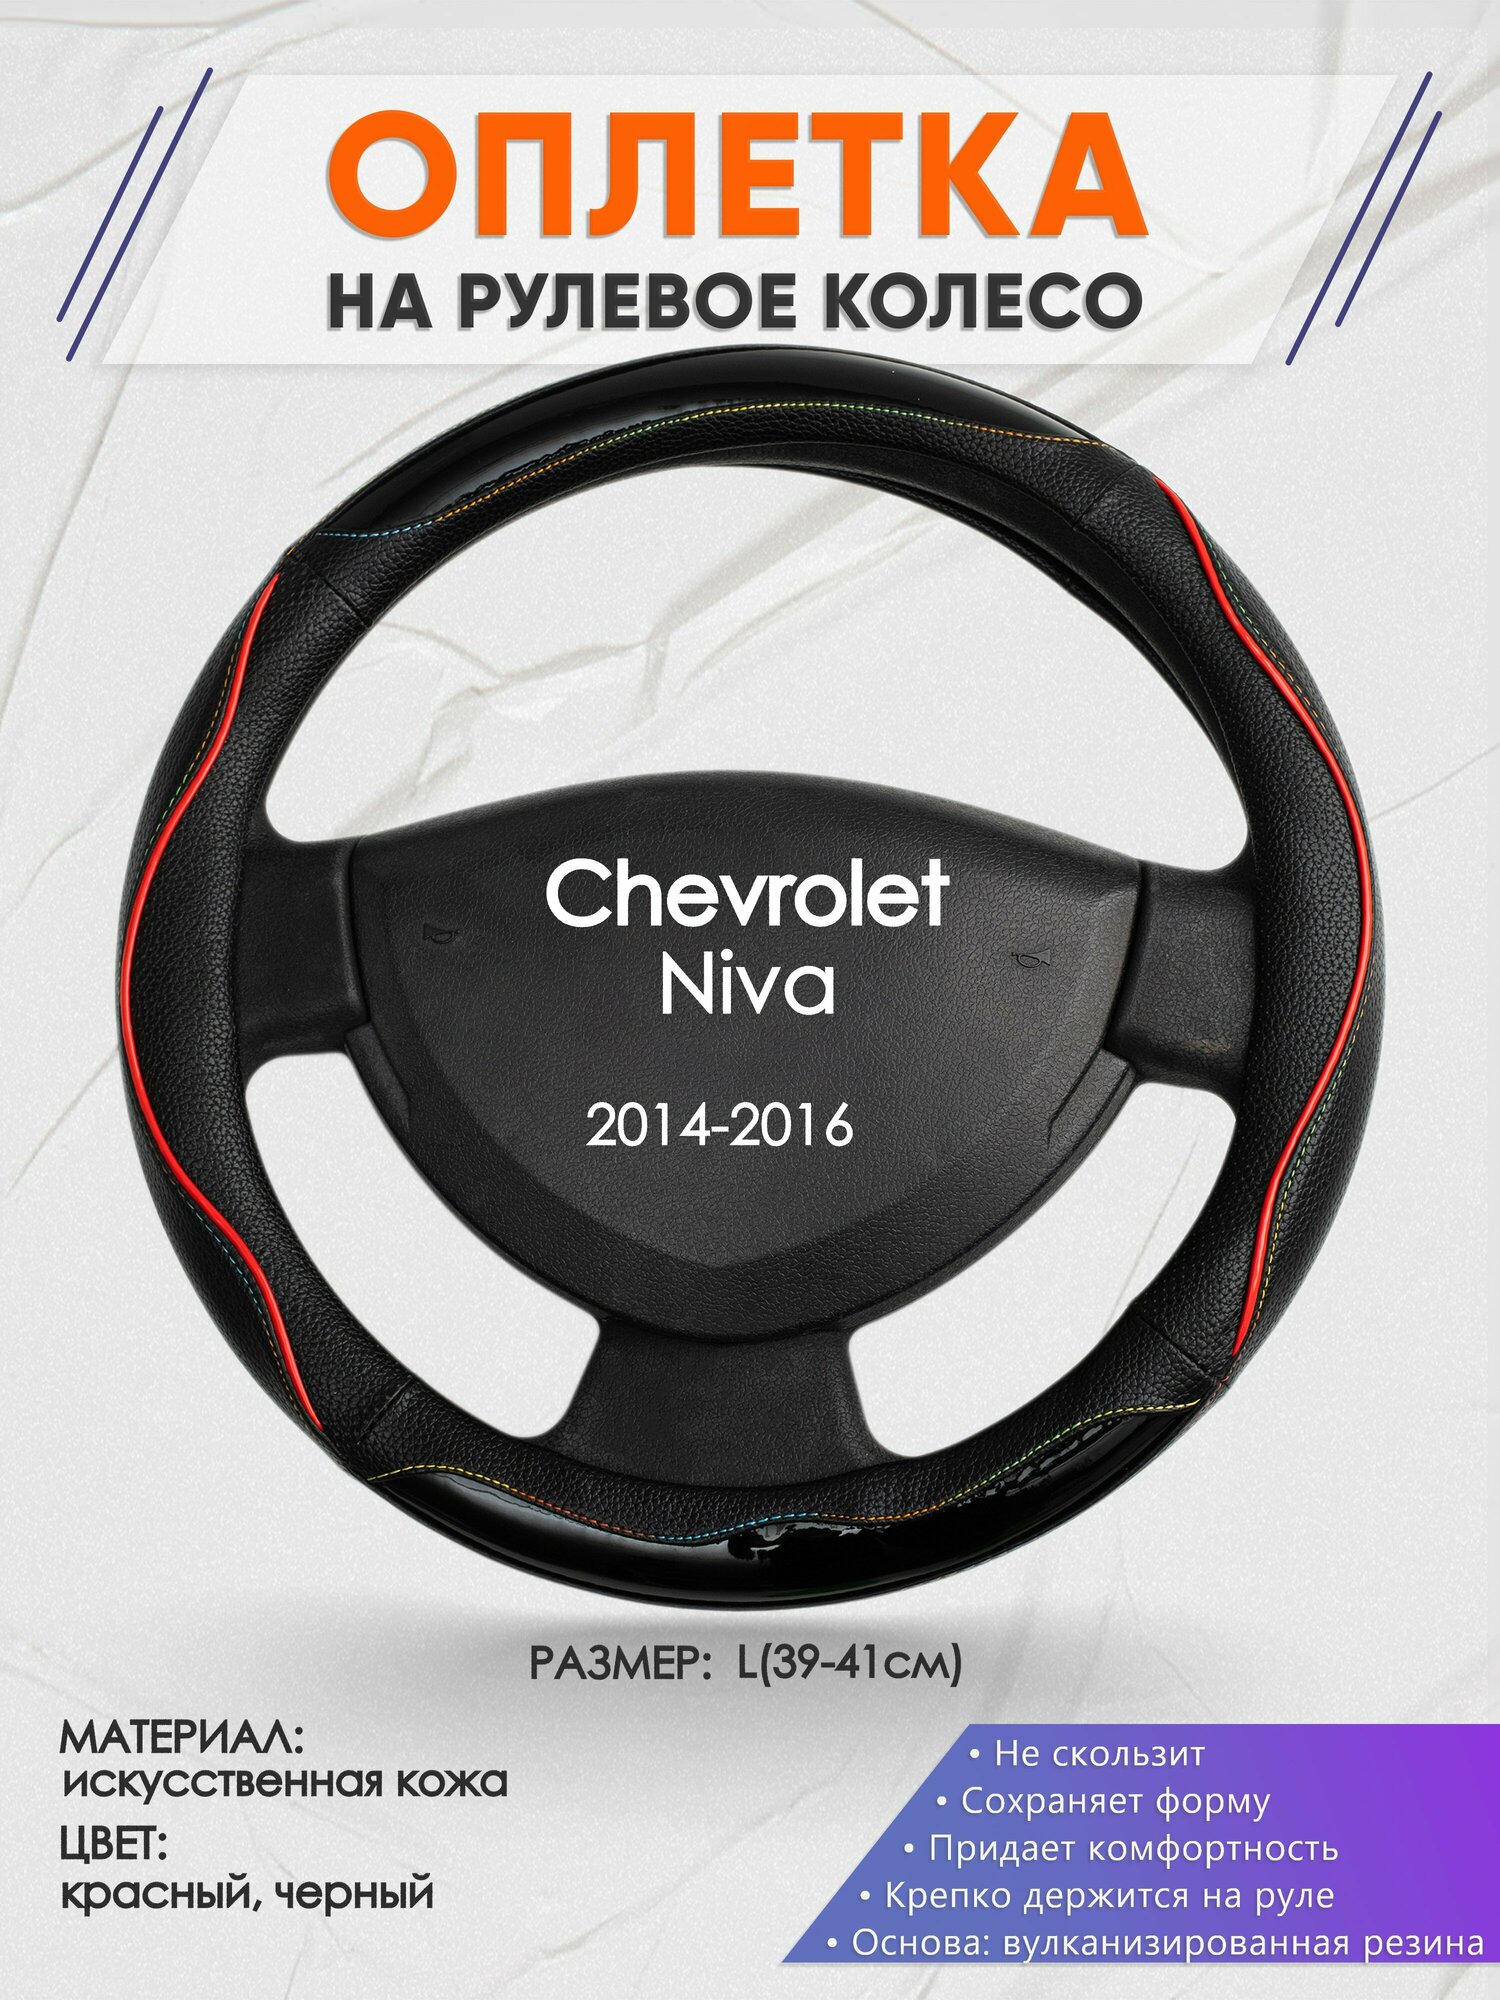 Оплетка на руль для Chevrolet Niva (Шевроле Нива) 2014-2016, L(39-41см), Искусственная кожа 76